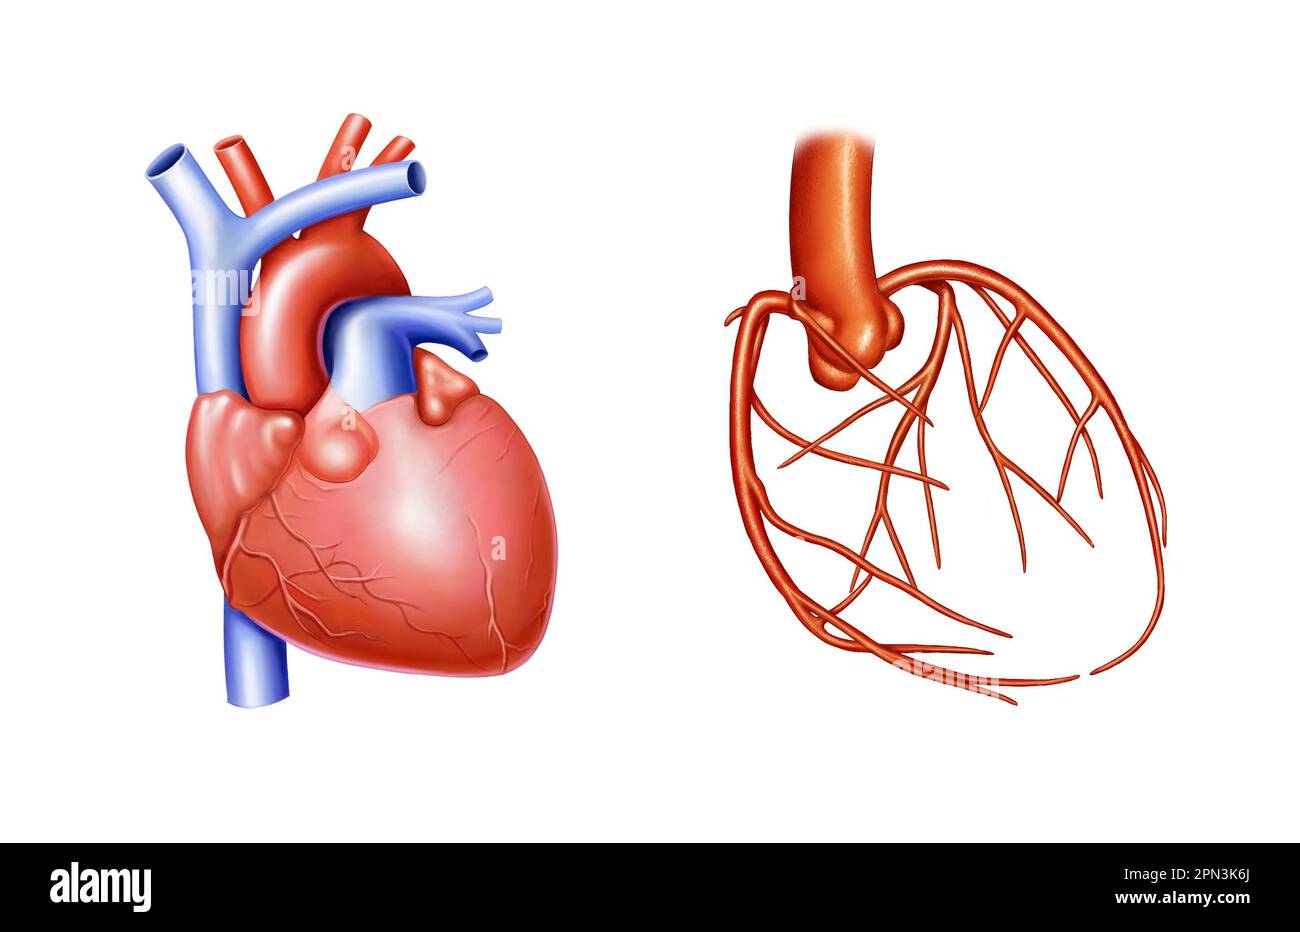 anatomie cardiaque et cardiovasculaire Banque D'Images